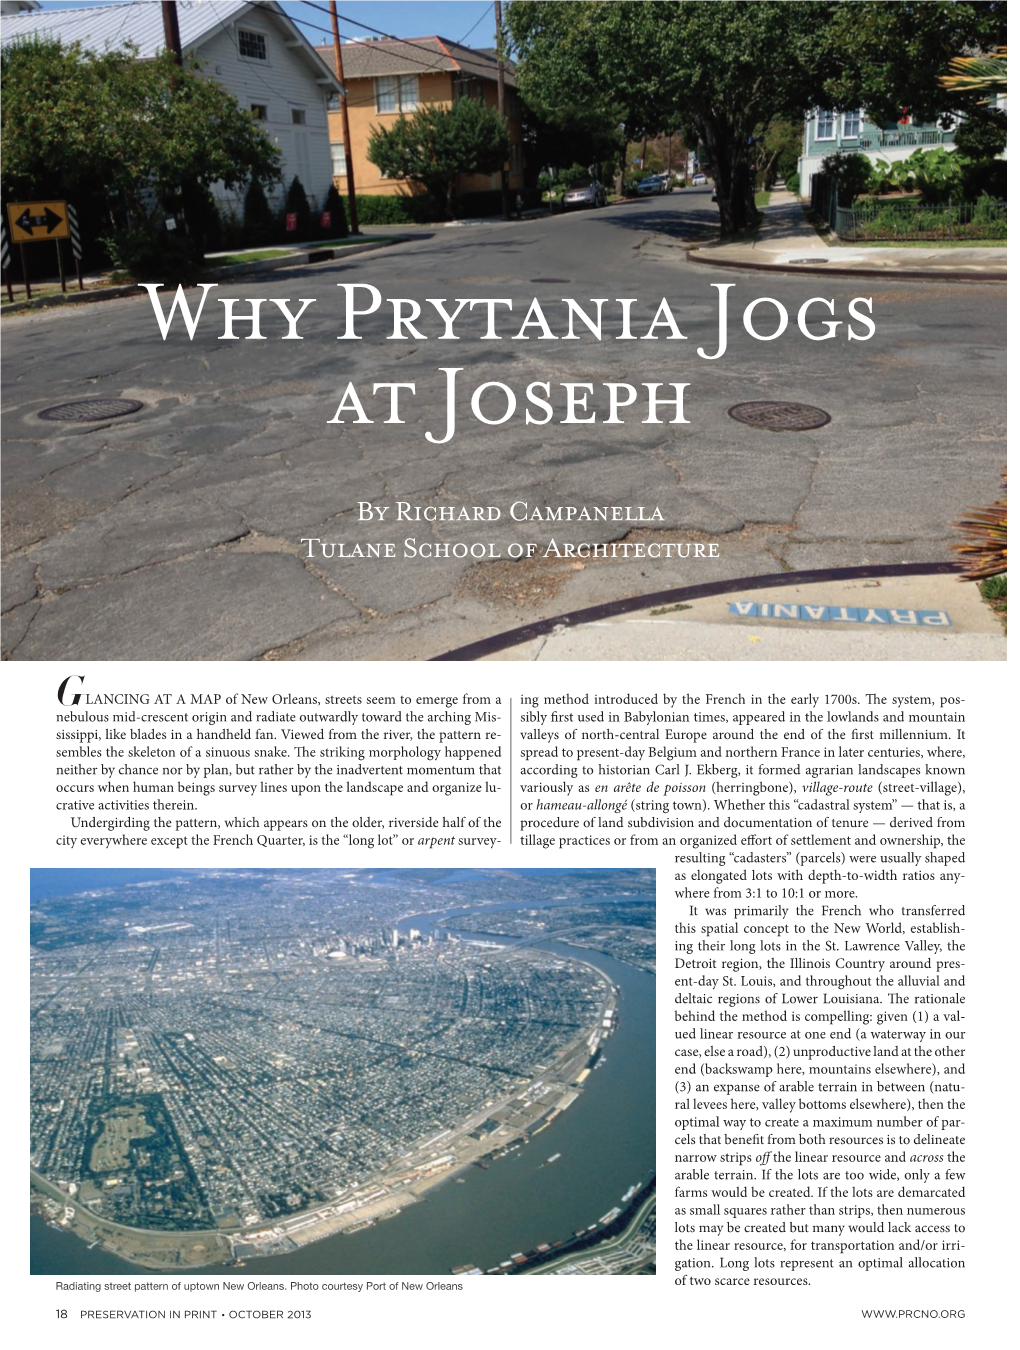 Why Prytania Jogs at Joseph